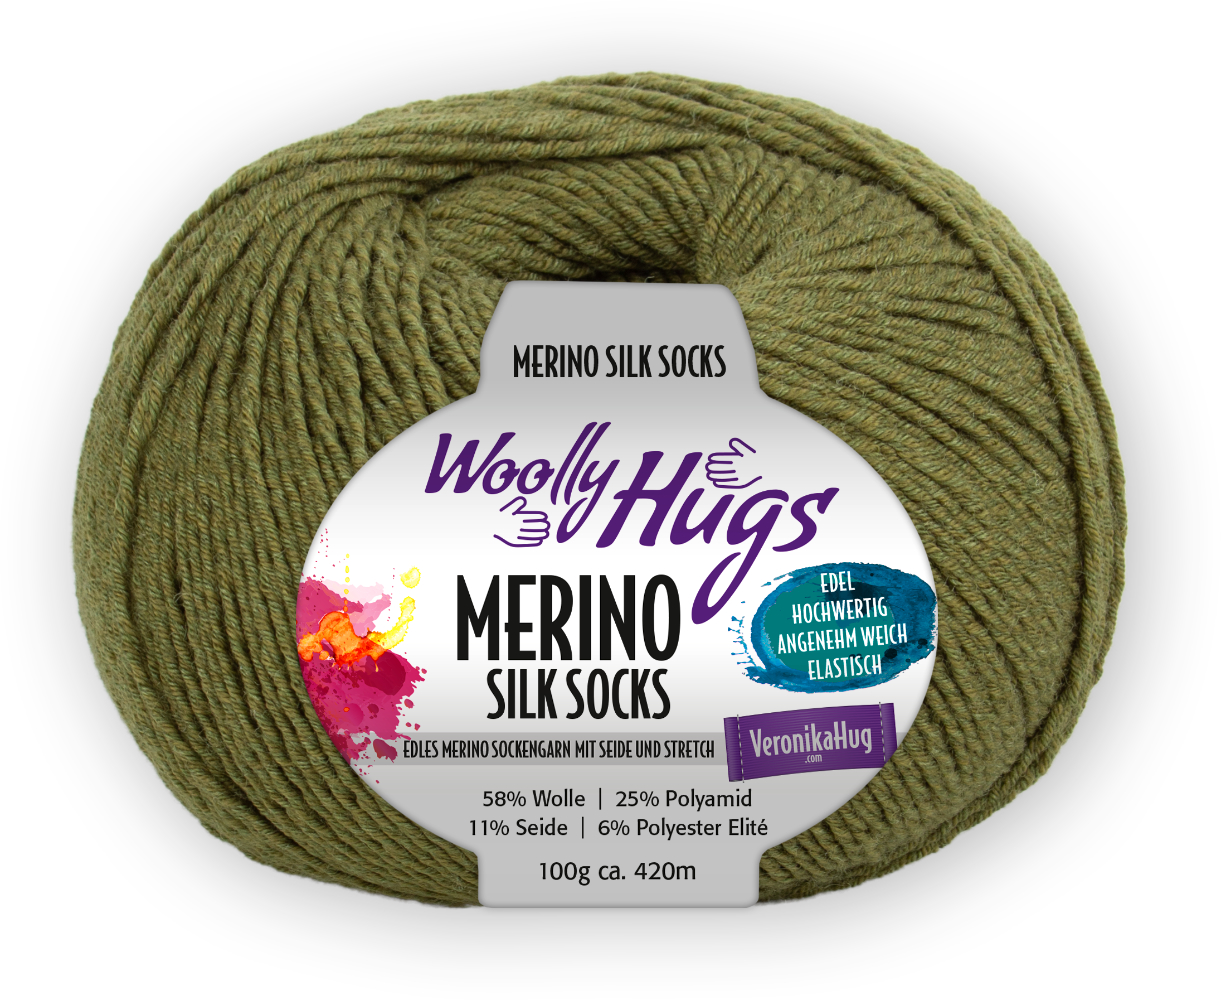 Merino Silk Socks Stretch, 4-fach von Woolly Hugs 0273 - oliv